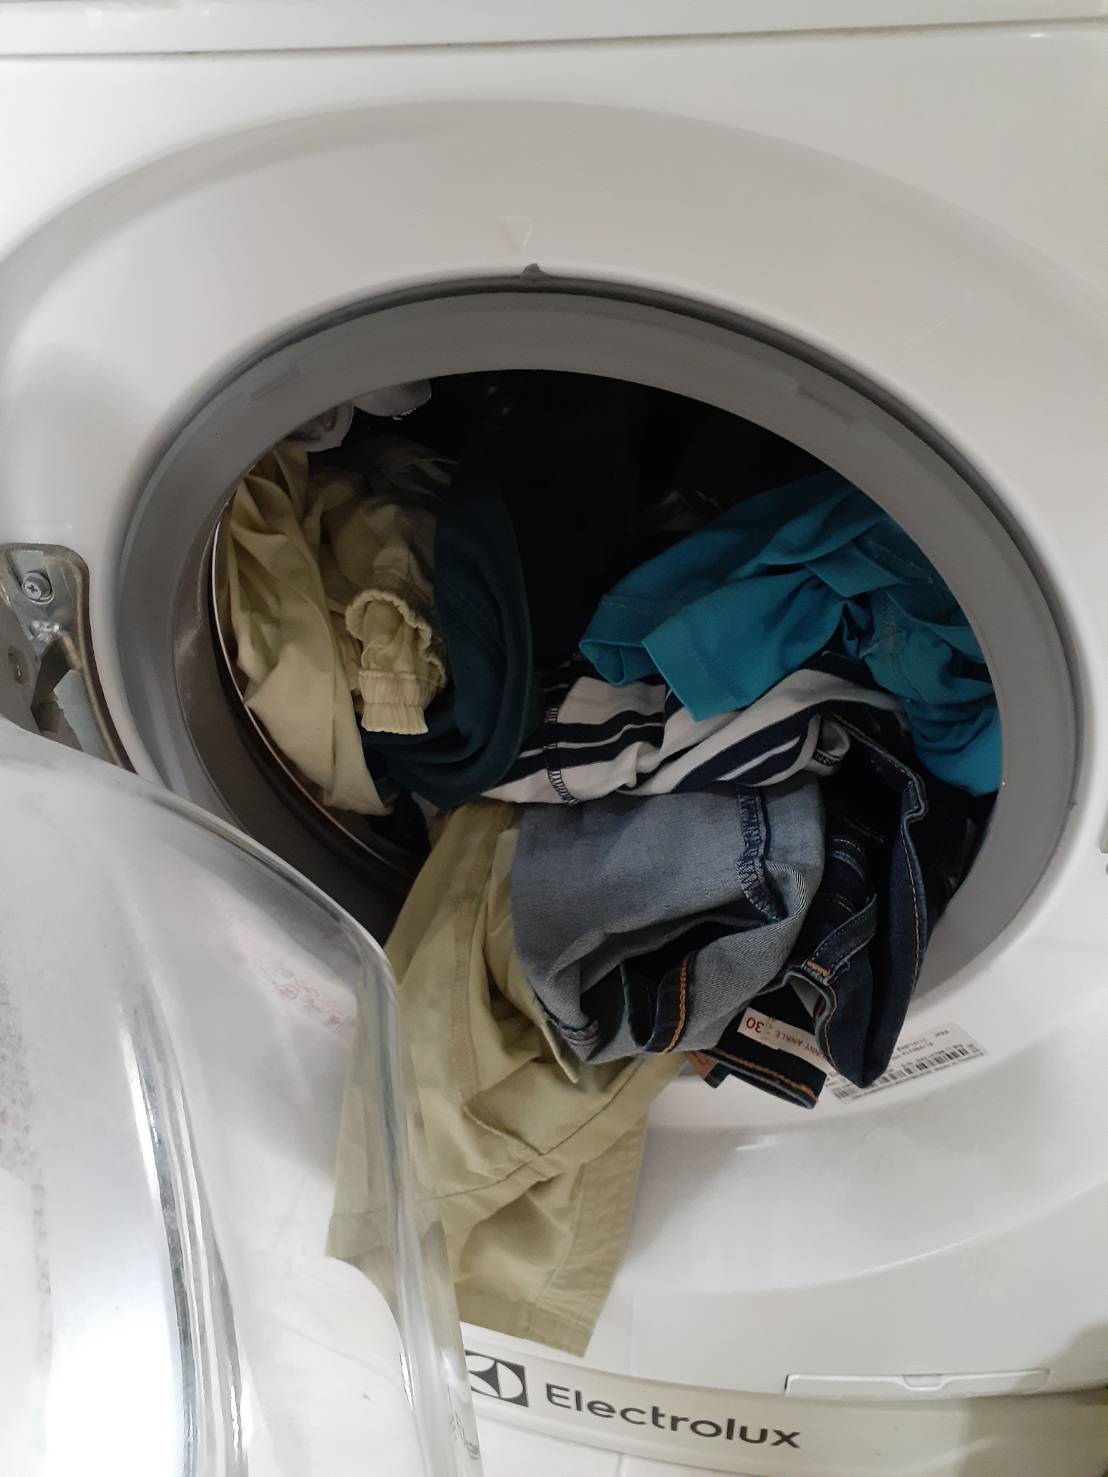 แนะ 7 วิธีซักผ้า ลดเสี่ยงโควิด ย้ำใช้เครื่องซักผ้าแบบหยอดเหรียญ  ระวังจุดสัมผัสร่วม